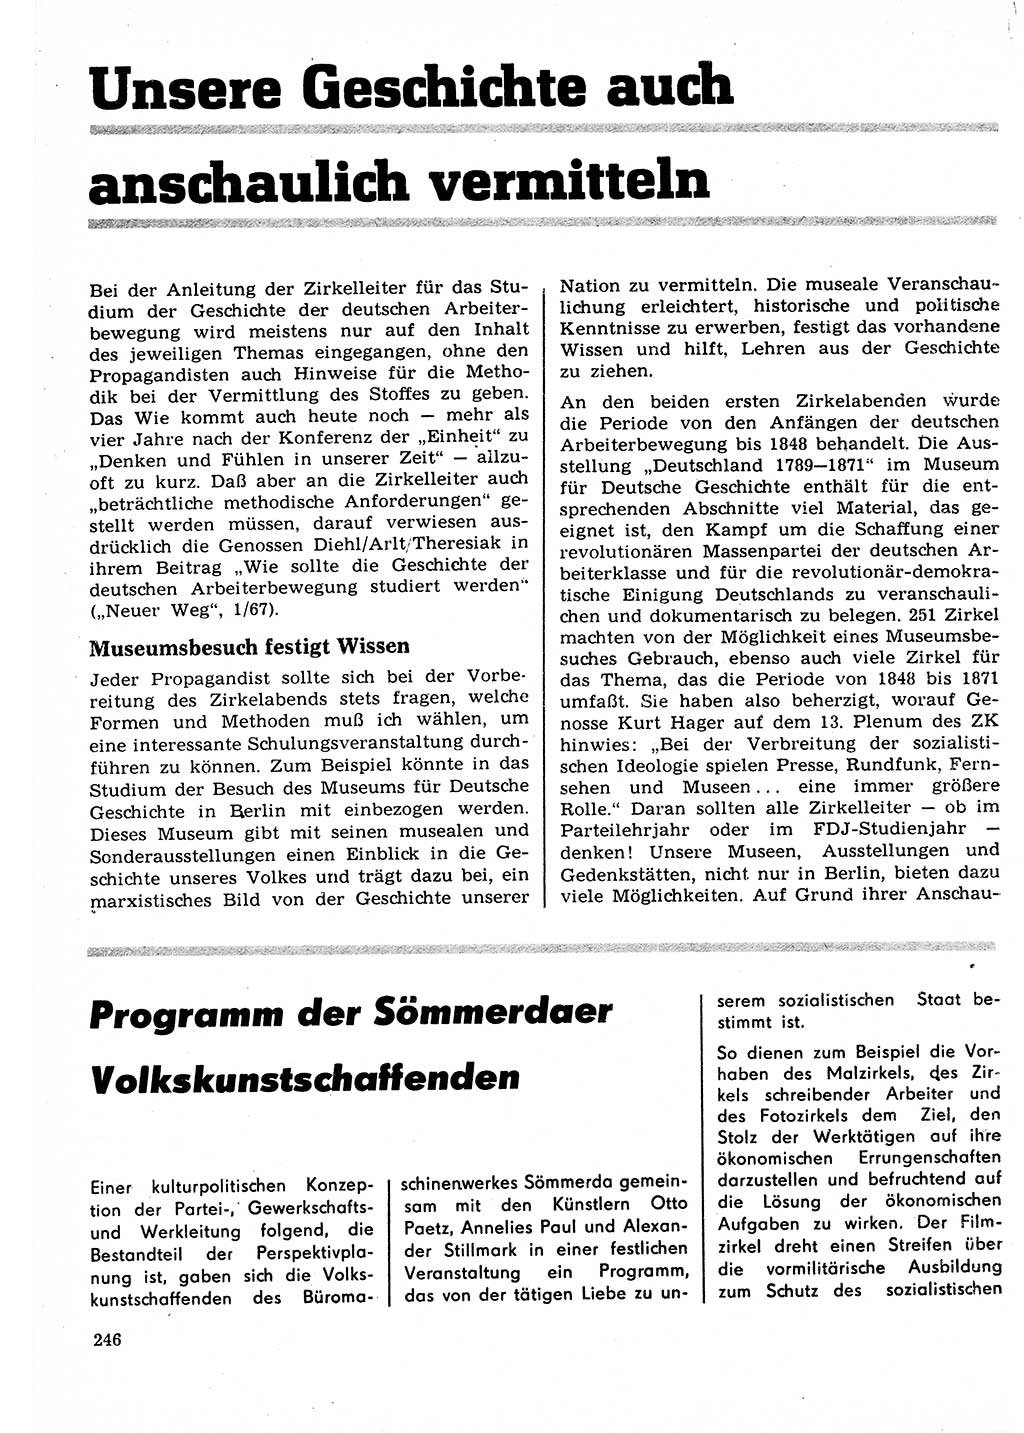 Neuer Weg (NW), Organ des Zentralkomitees (ZK) der SED (Sozialistische Einheitspartei Deutschlands) für Fragen des Parteilebens, 22. Jahrgang [Deutsche Demokratische Republik (DDR)] 1967, Seite 246 (NW ZK SED DDR 1967, S. 246)